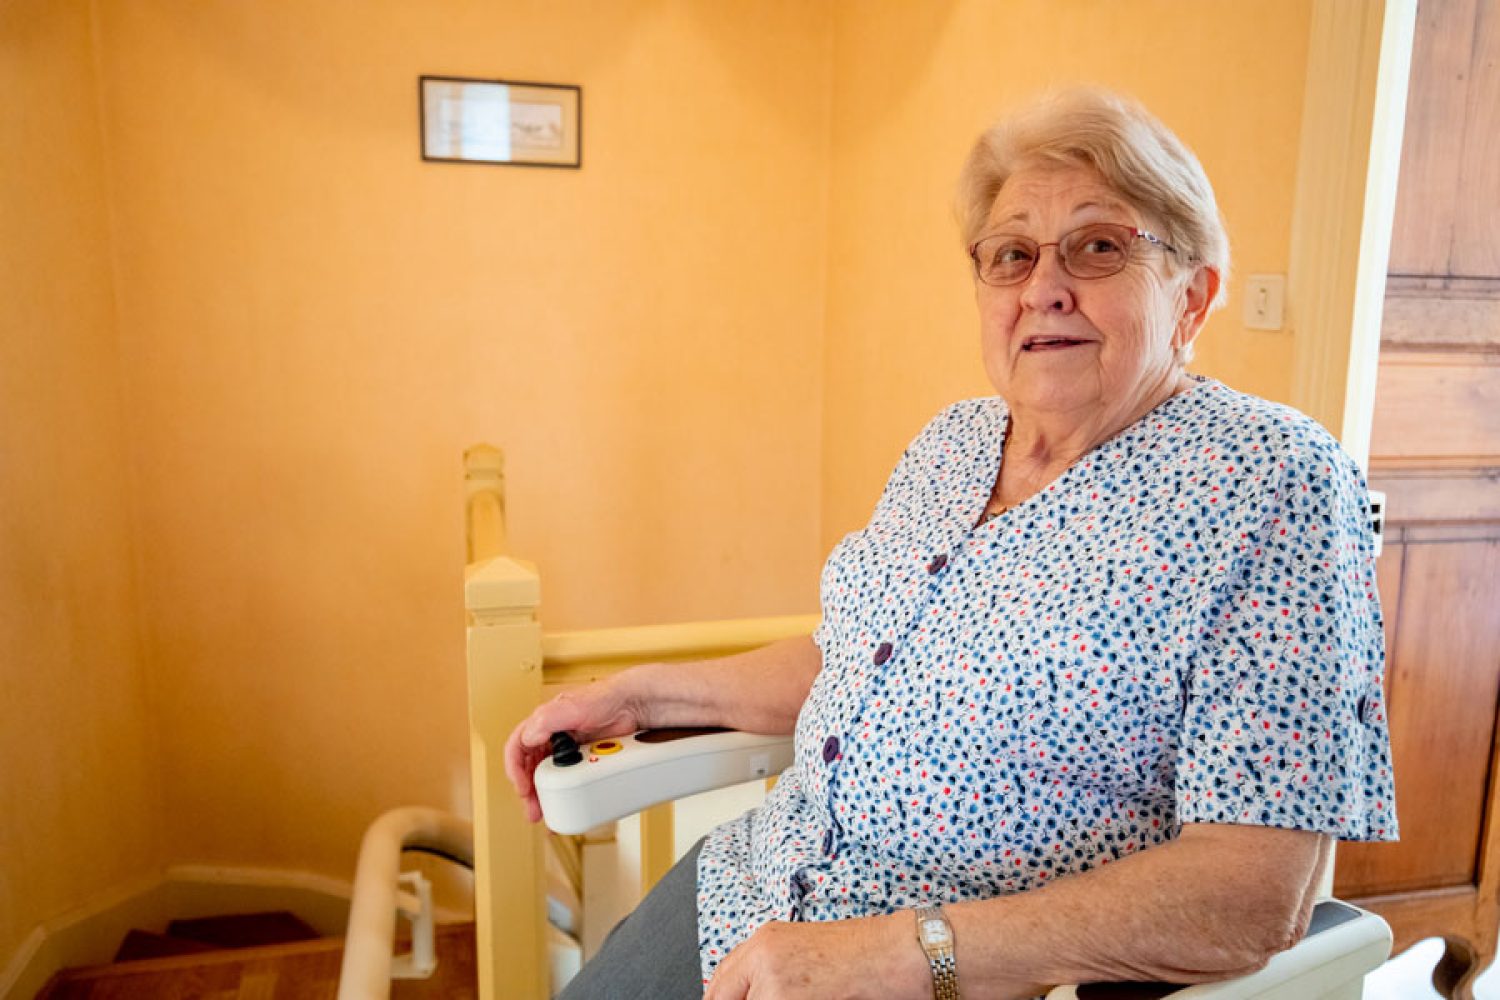 Favoriser le maintien à domicile et l'adaptation du logement (vieillissement / handicap) - SOLIHA Ariège